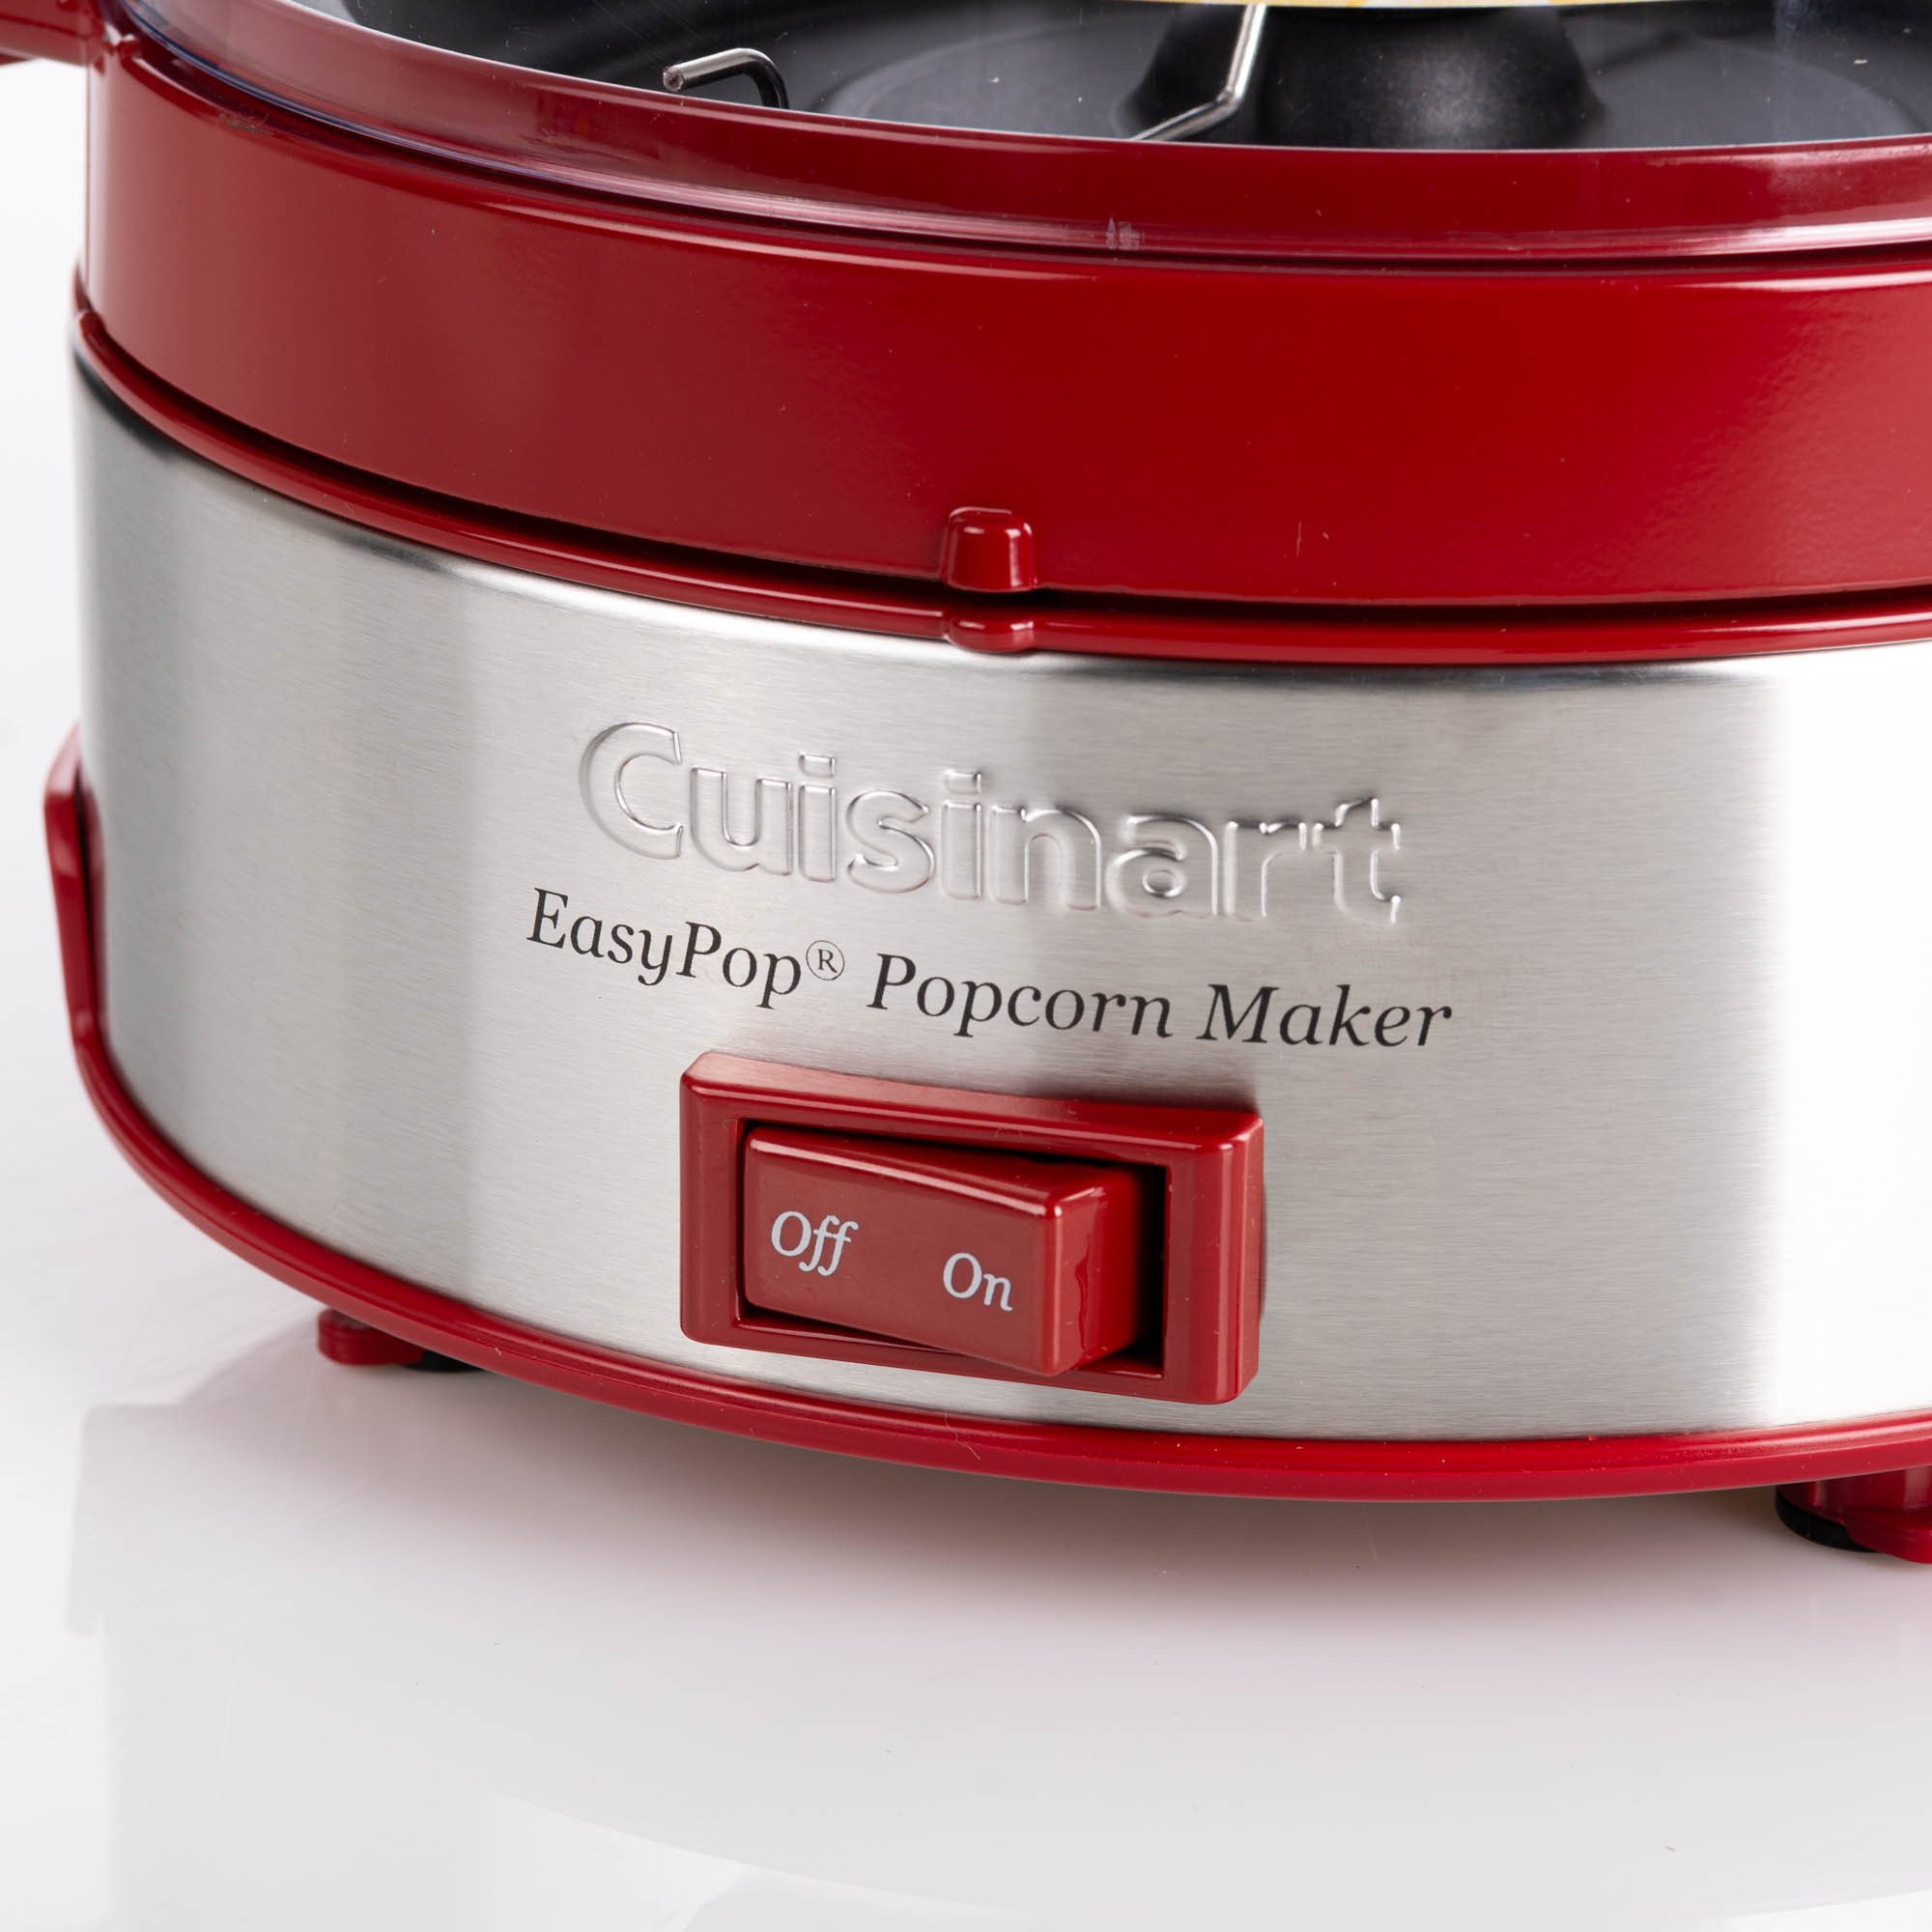 Máquina de palomitas Cuisinart CPM-700 cereza